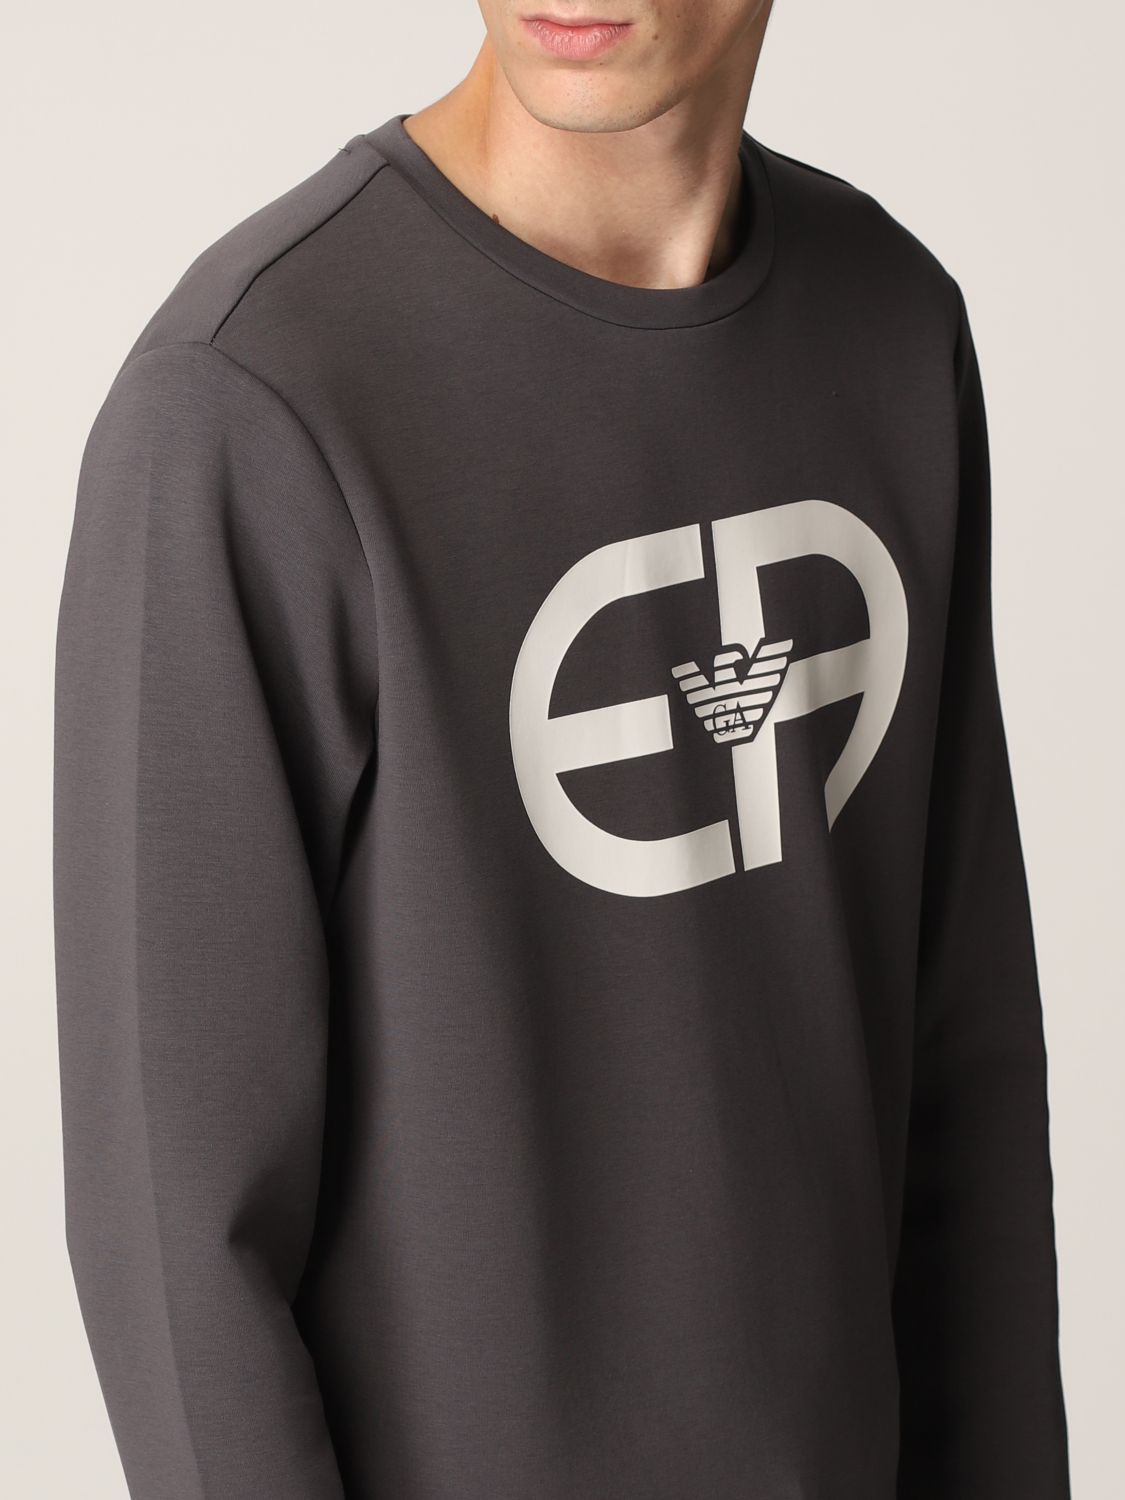 Sweatshirt Emporio Armani: Emporio Armani jumper in cotton blend with maxi logo grey 3